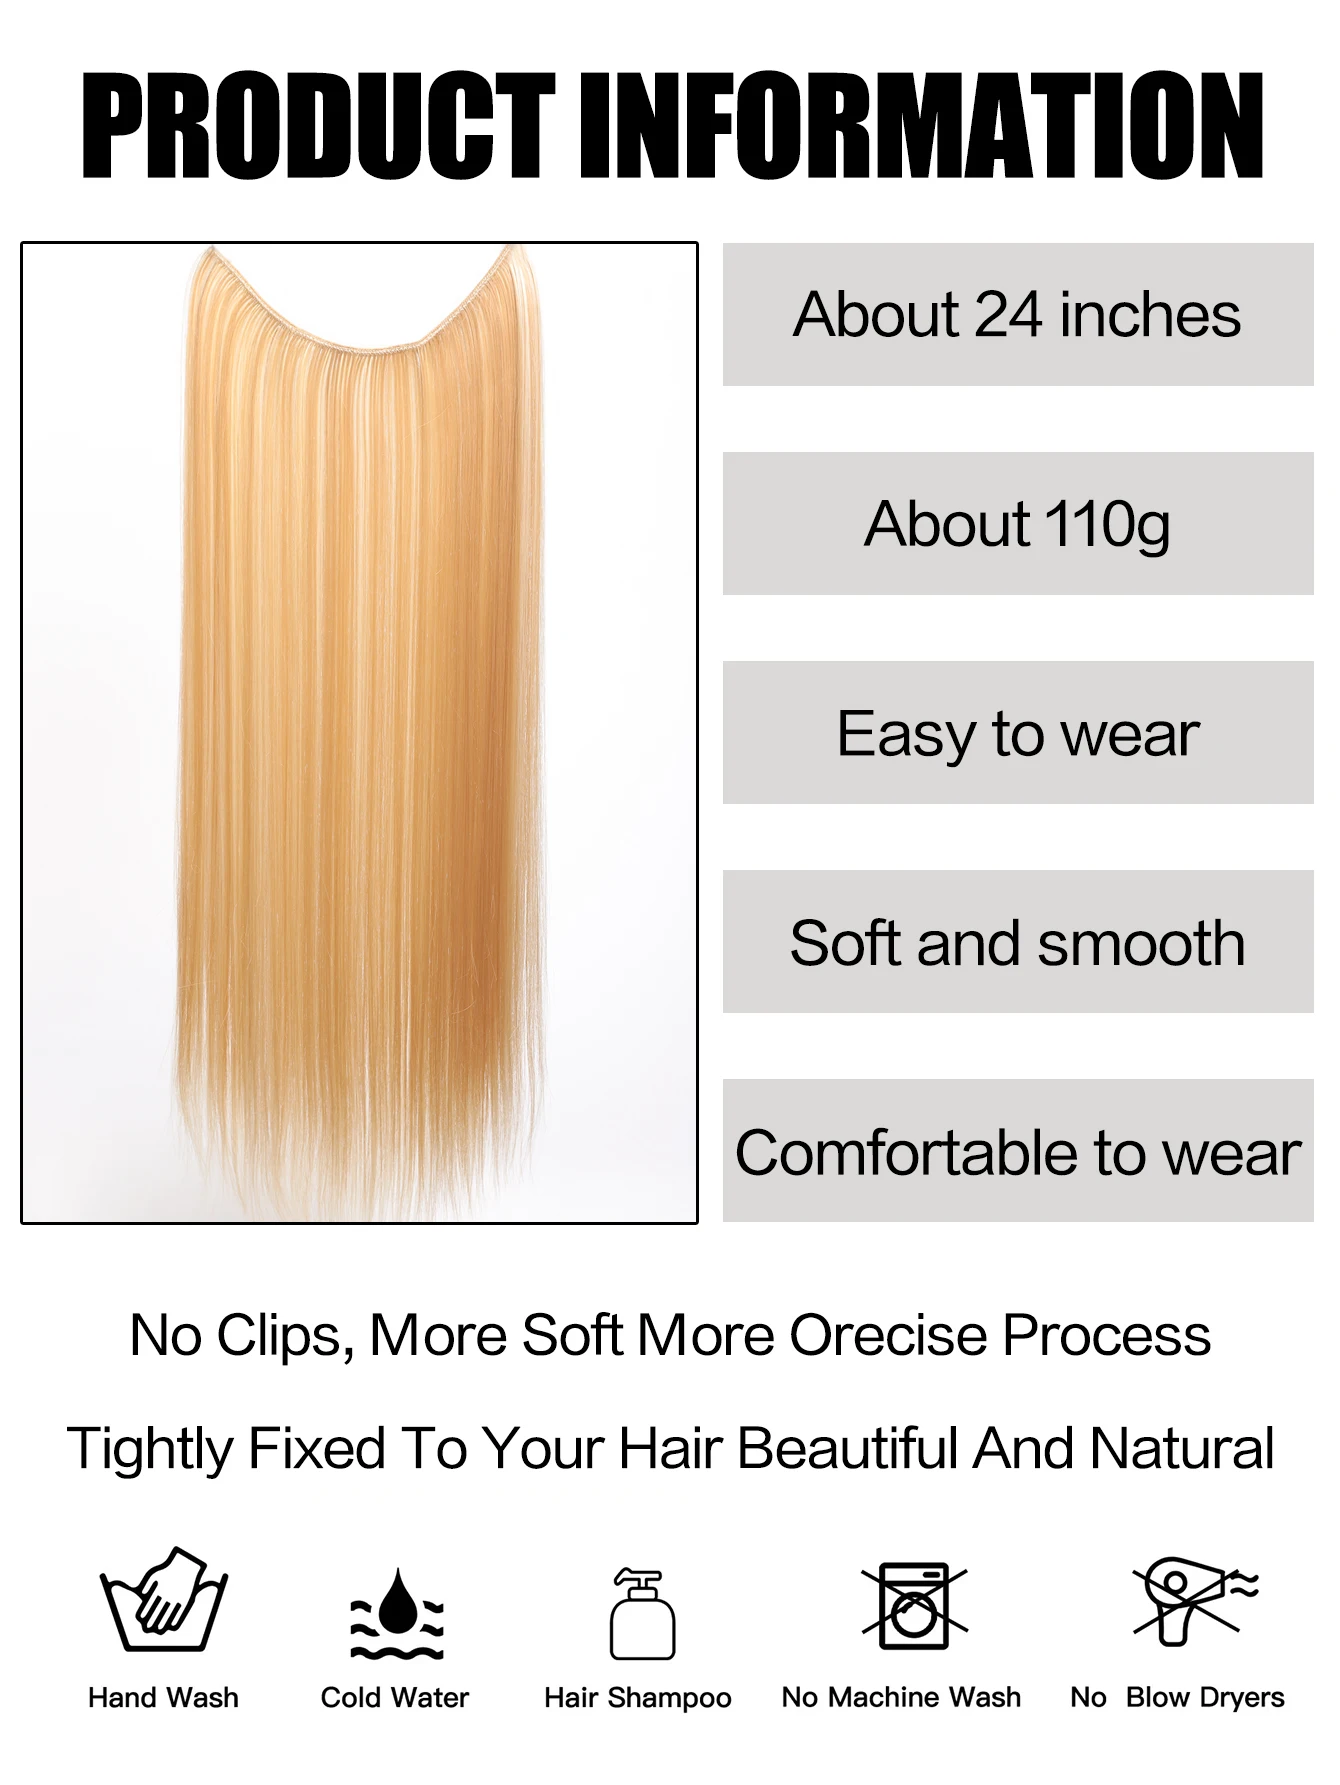 وصلات شعر اصطناعية غير مرئية للنساء ، قطع شعر بخيط سمكة ، بدون مقاطع ، شعر مزيف ، 24"